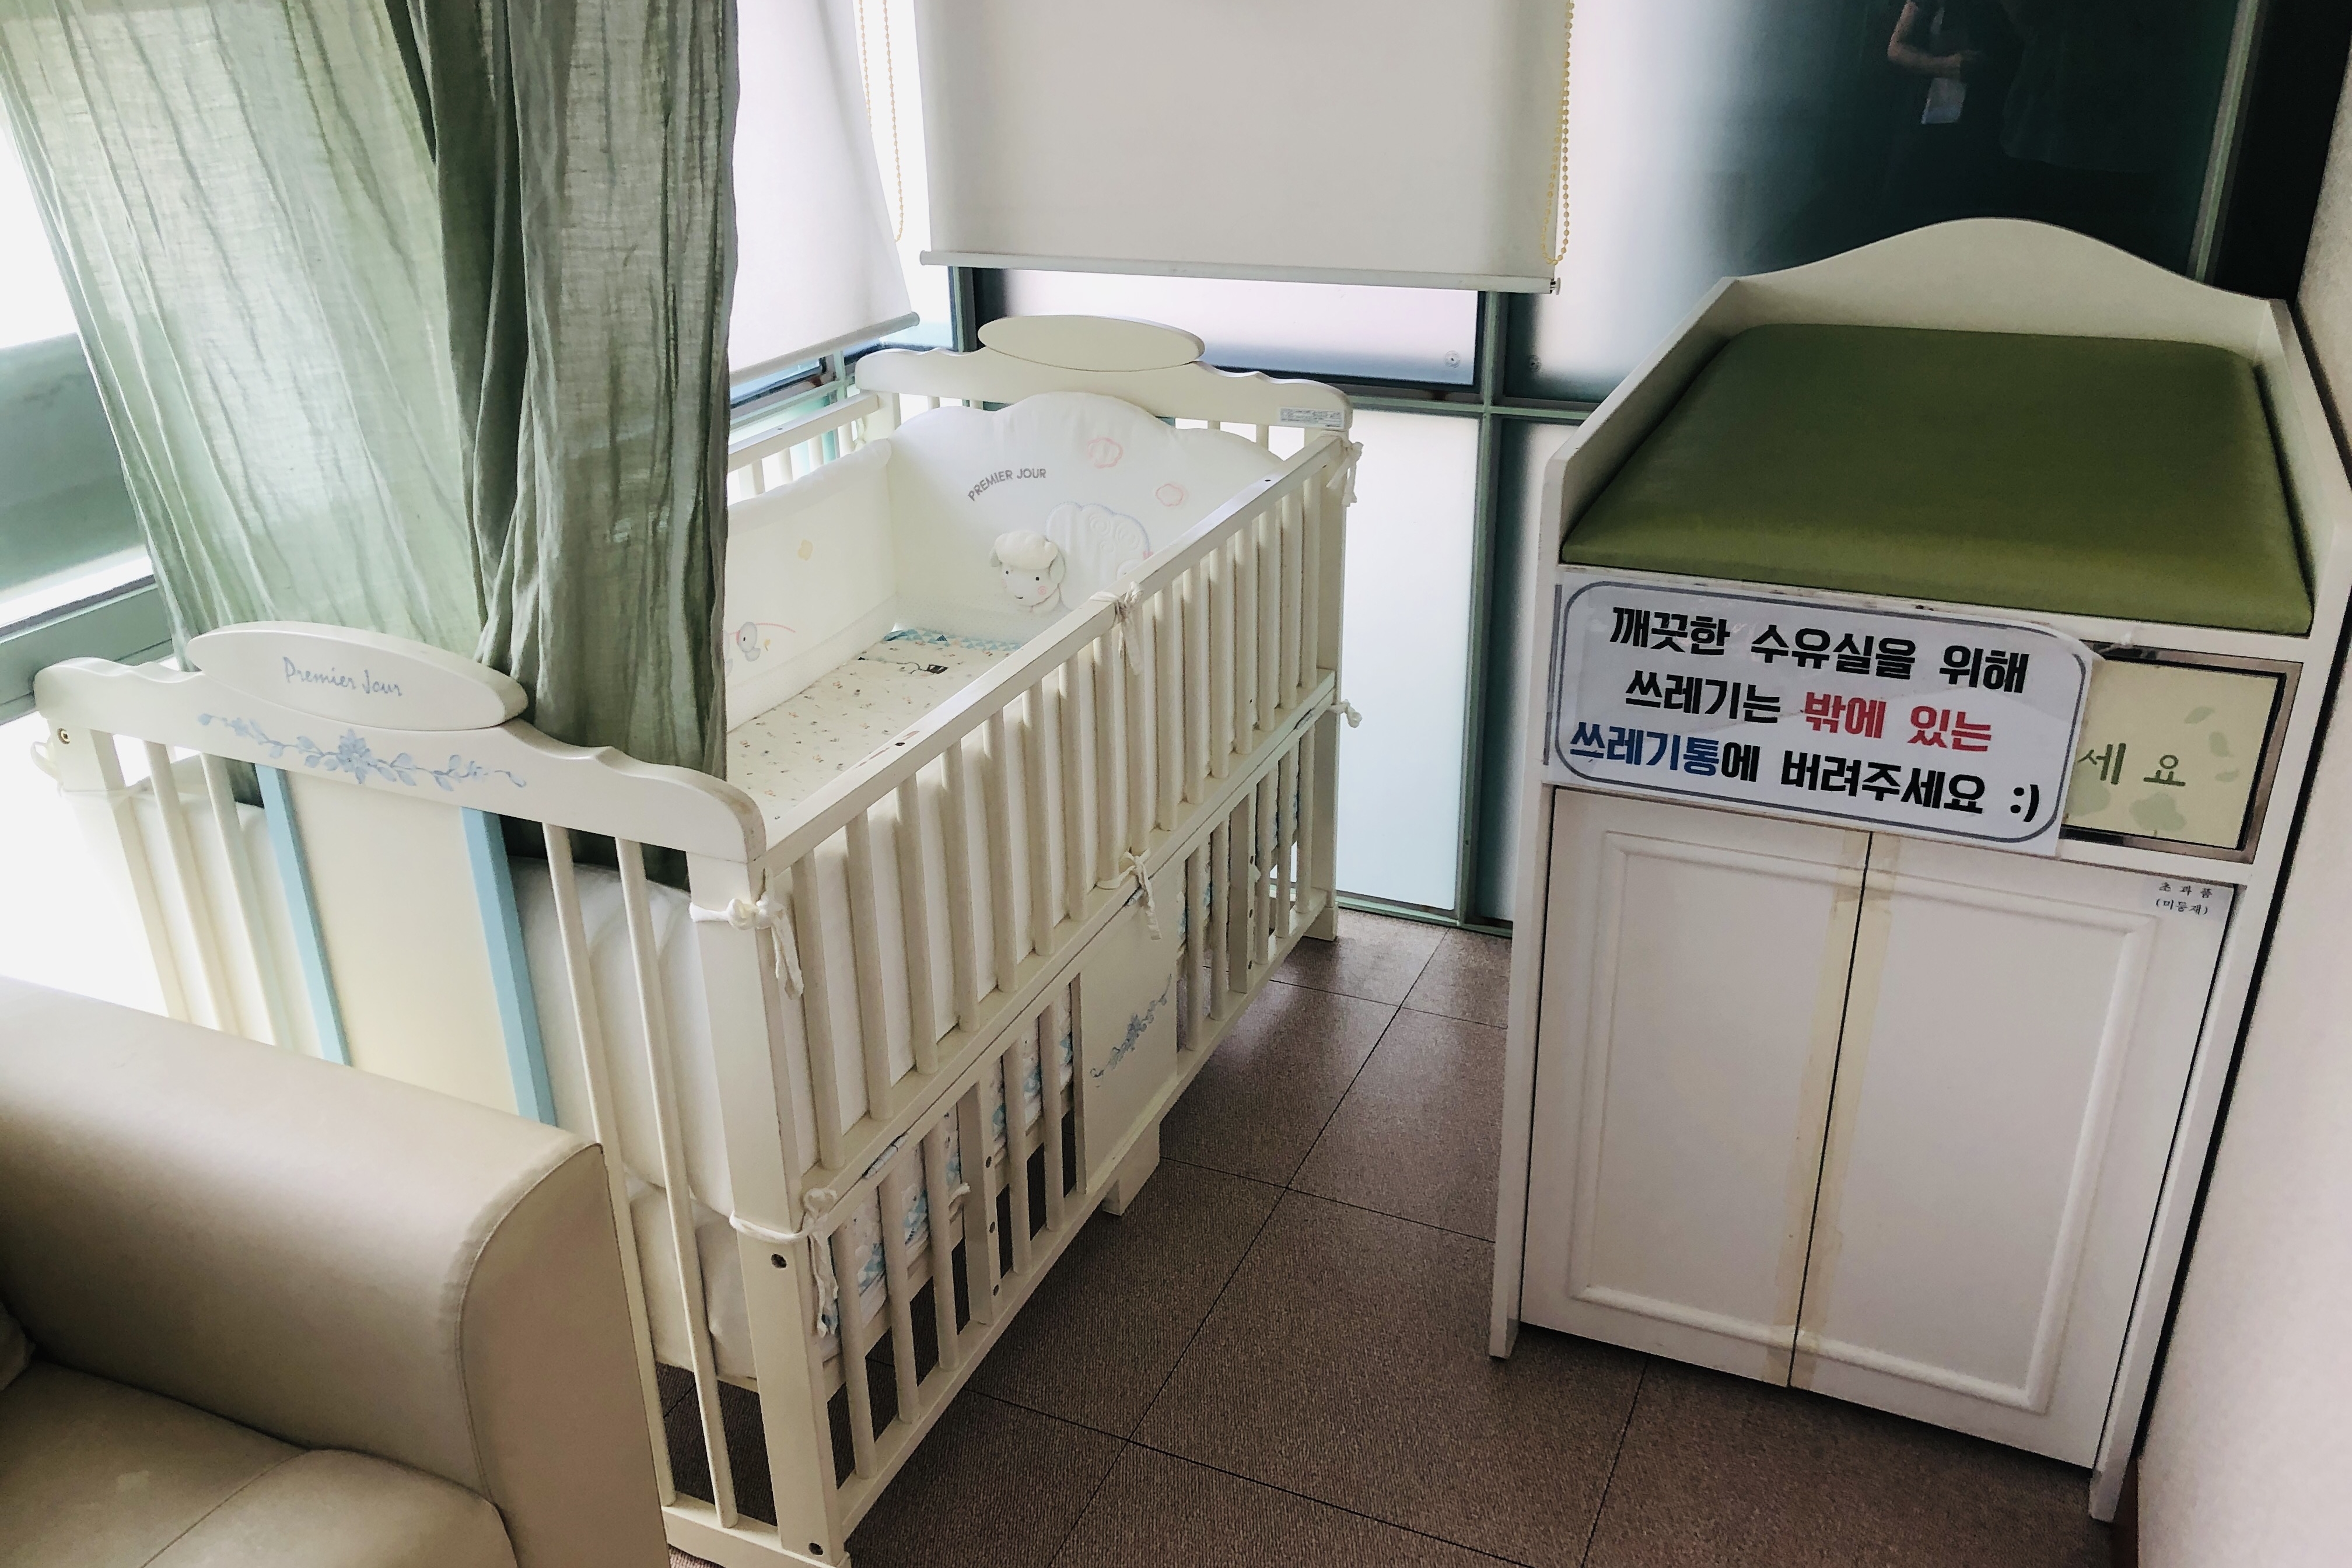 유아휴게공간0 : 유아침대가 설치되어있는 창경궁 수유실 내부 전경